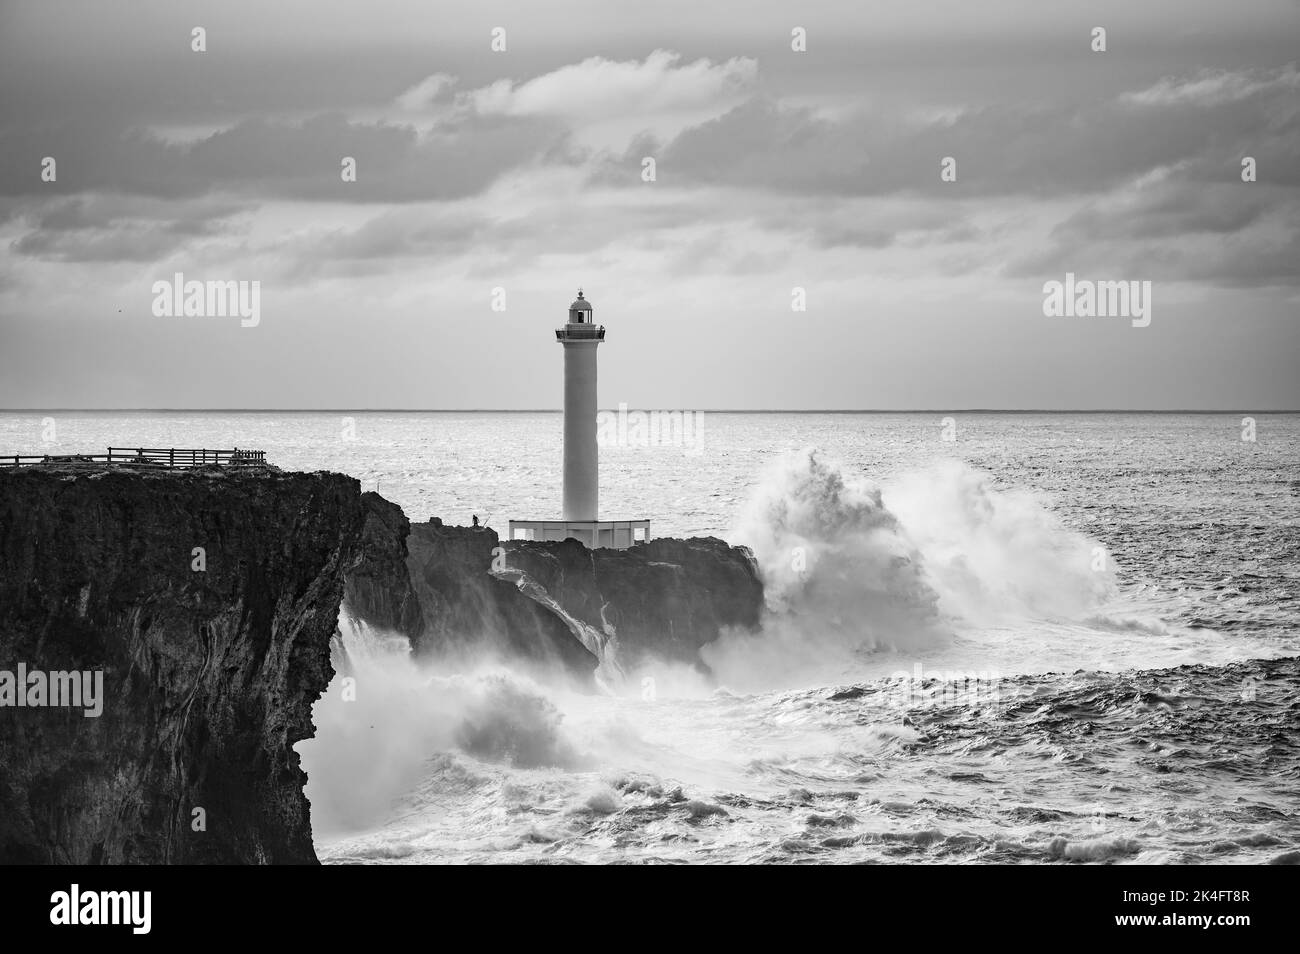 Une échelle de gris d'un phare sur le rocher entouré par la mer orageux et les vagues Banque D'Images